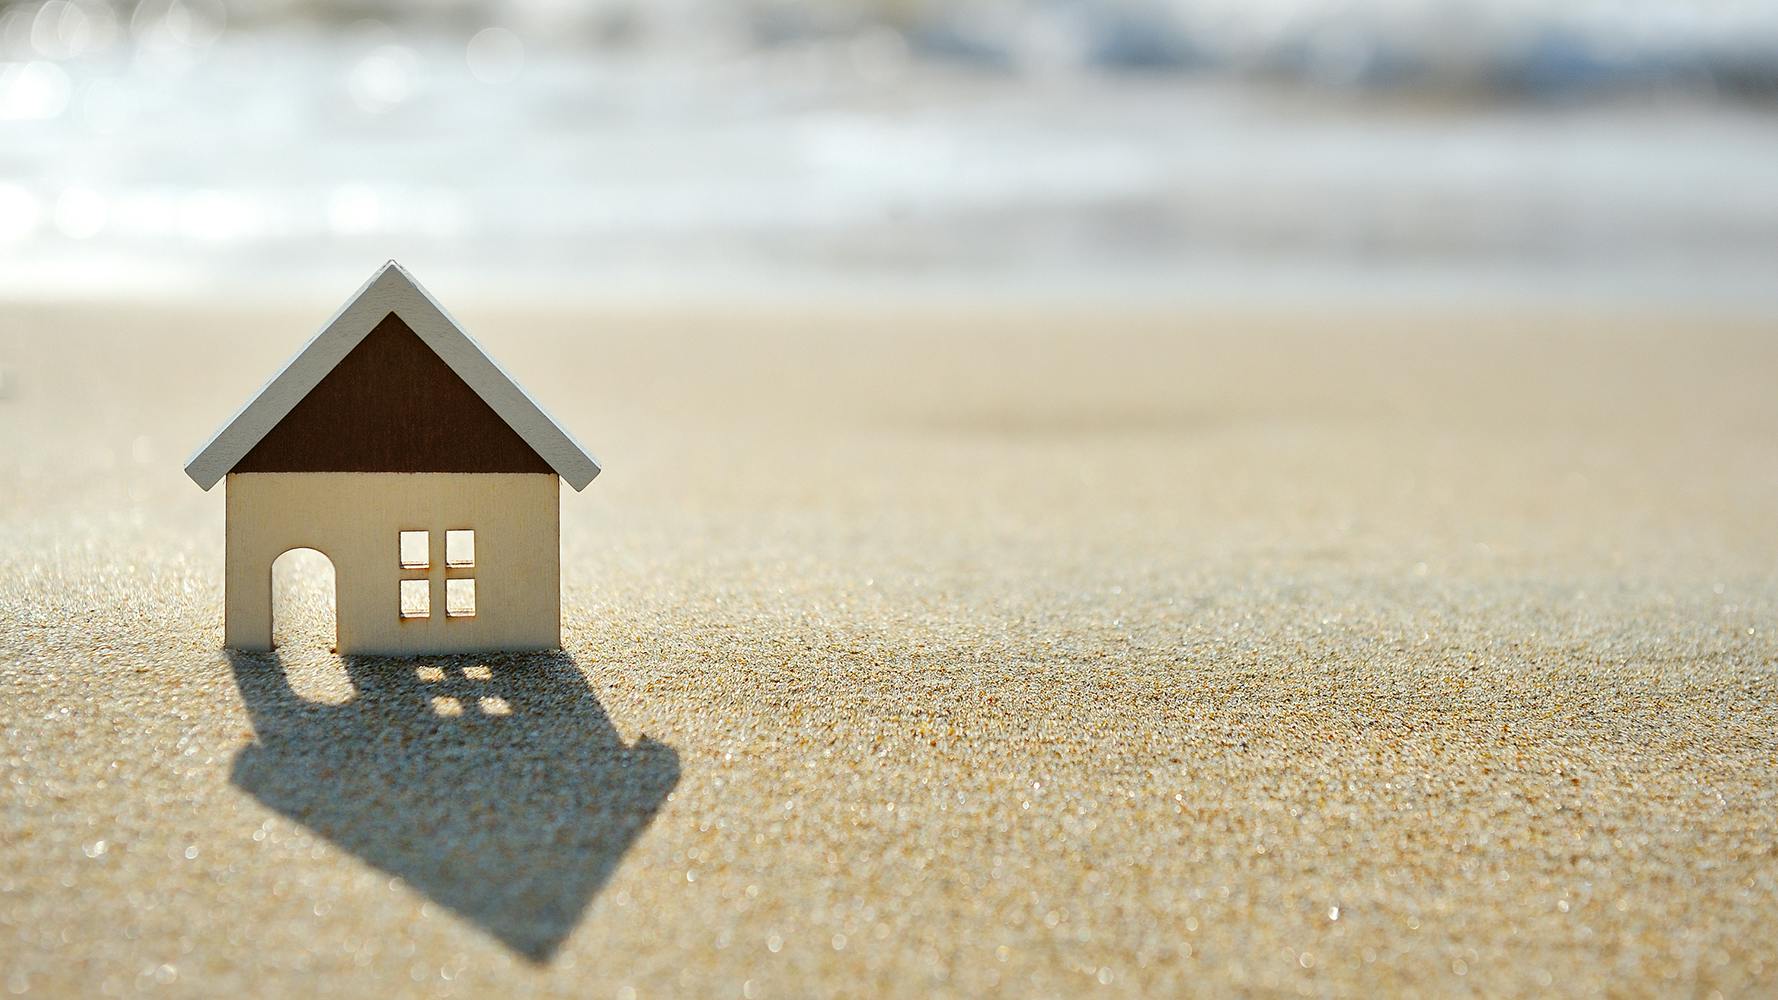 little house on the sand beach near sea